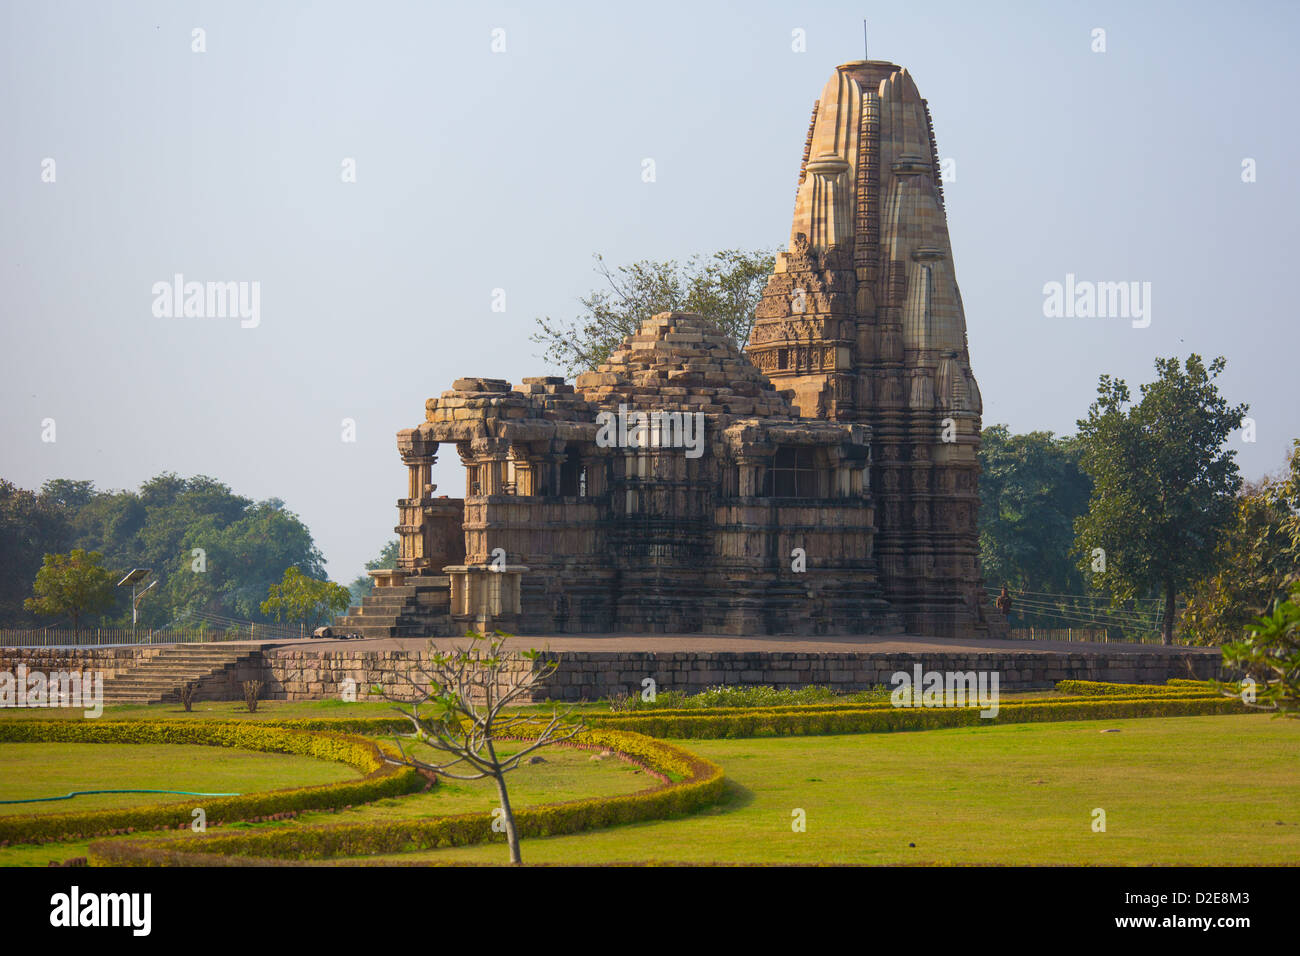 Hindu Temple in Khajuraho, India Stock Photo